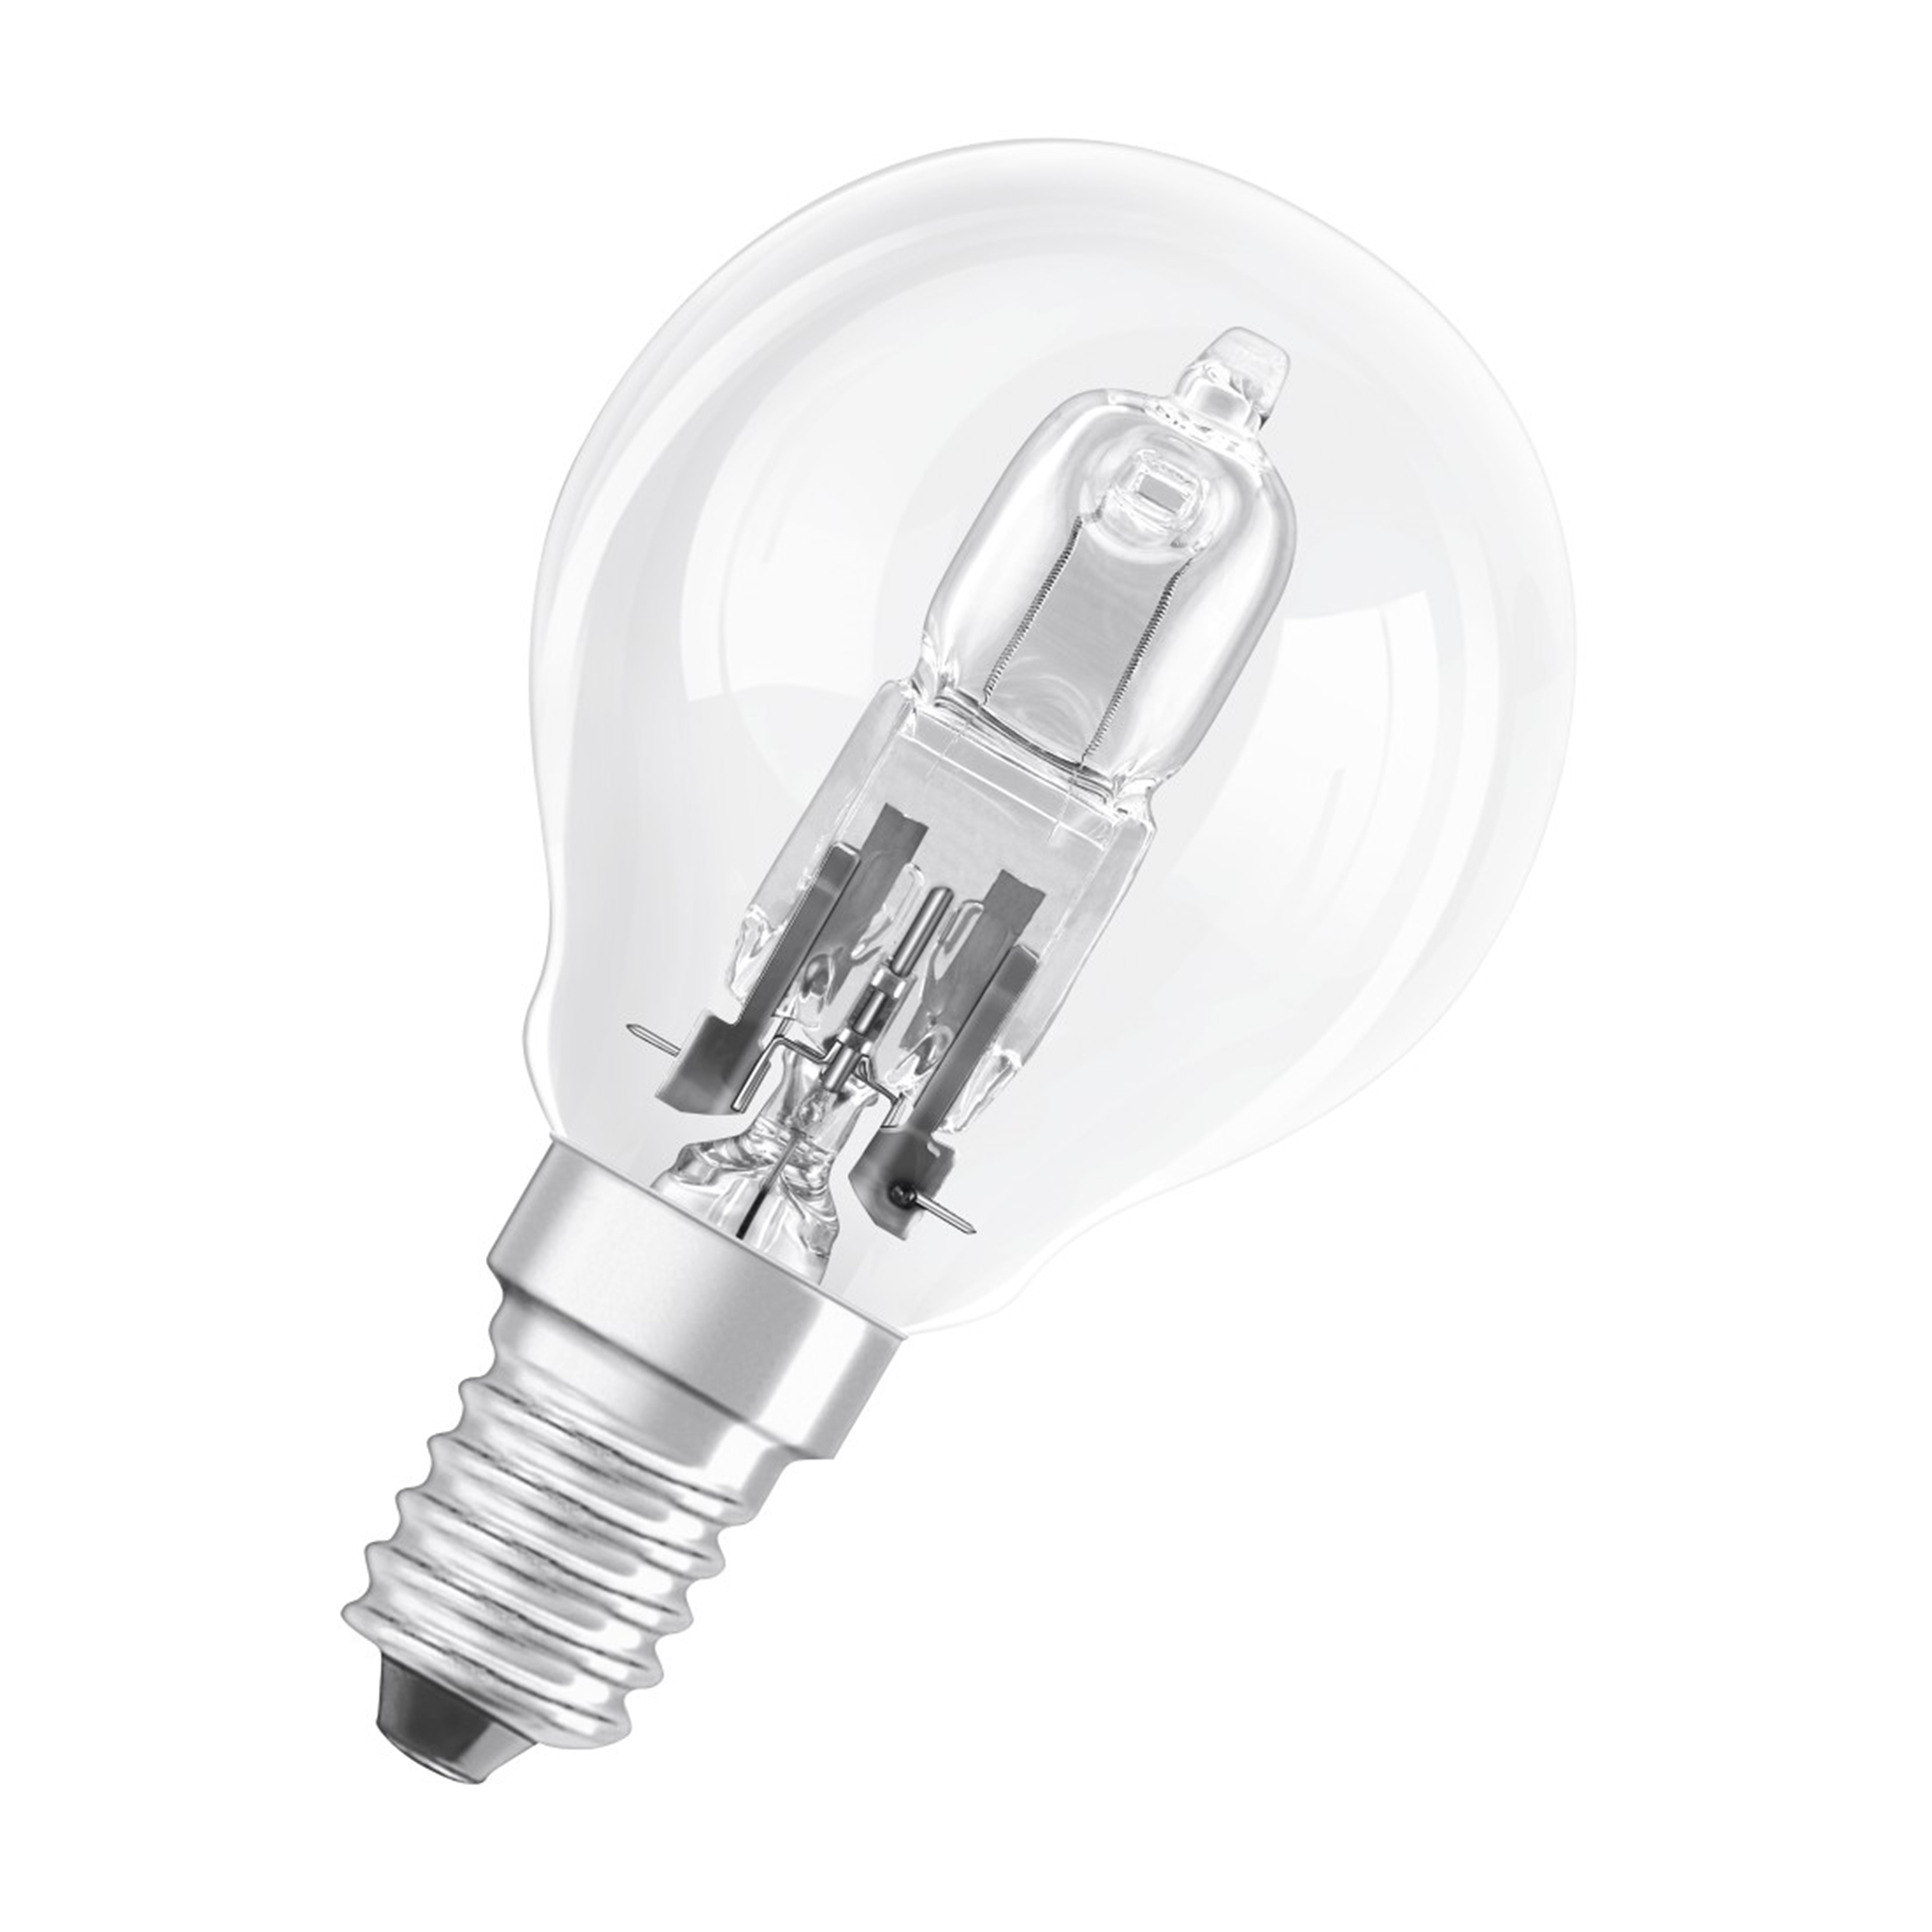 XAVAX E14, 20W Warmweiß E14 LED-Lampe